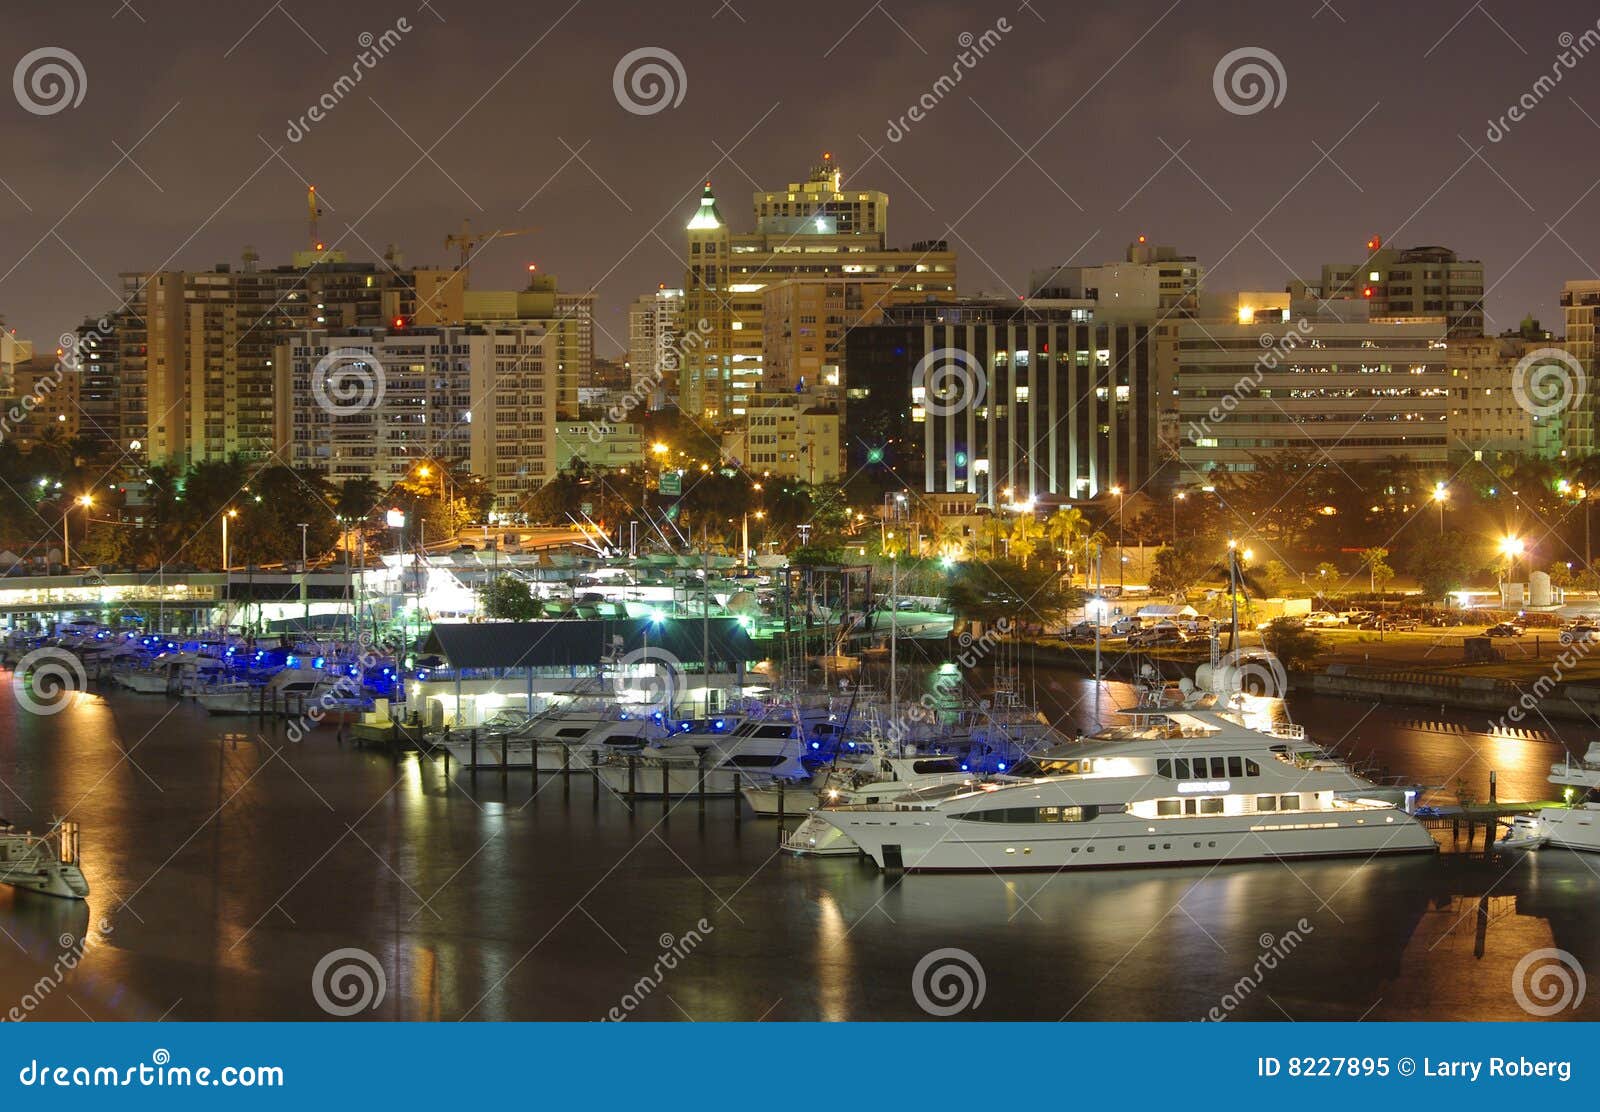 puerto rico at night